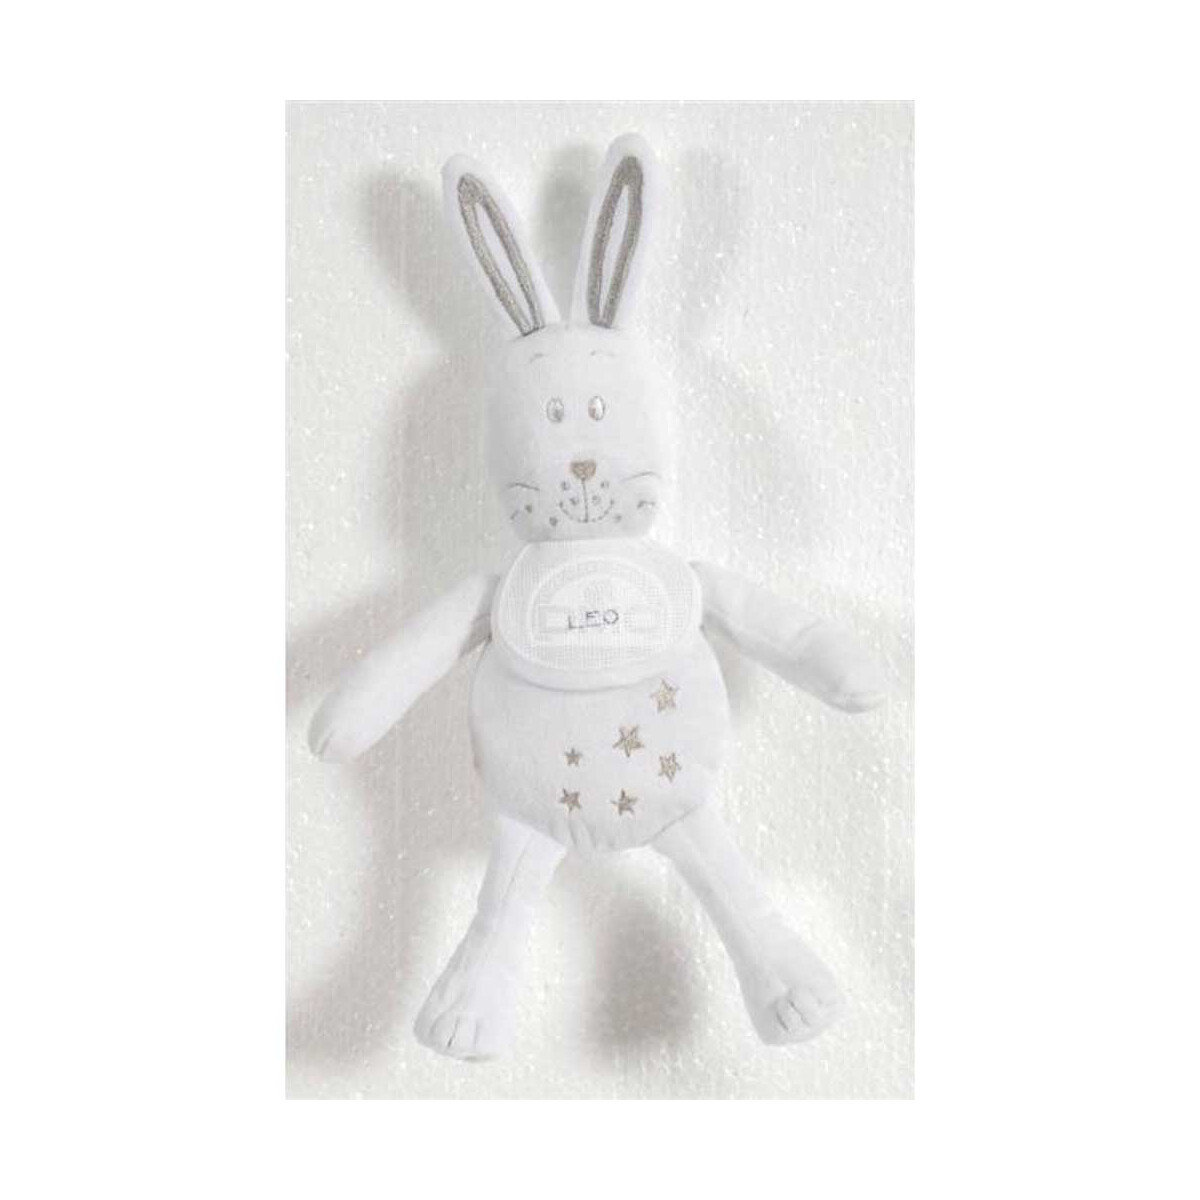 DMC Soft Toy for stitching White rabbit